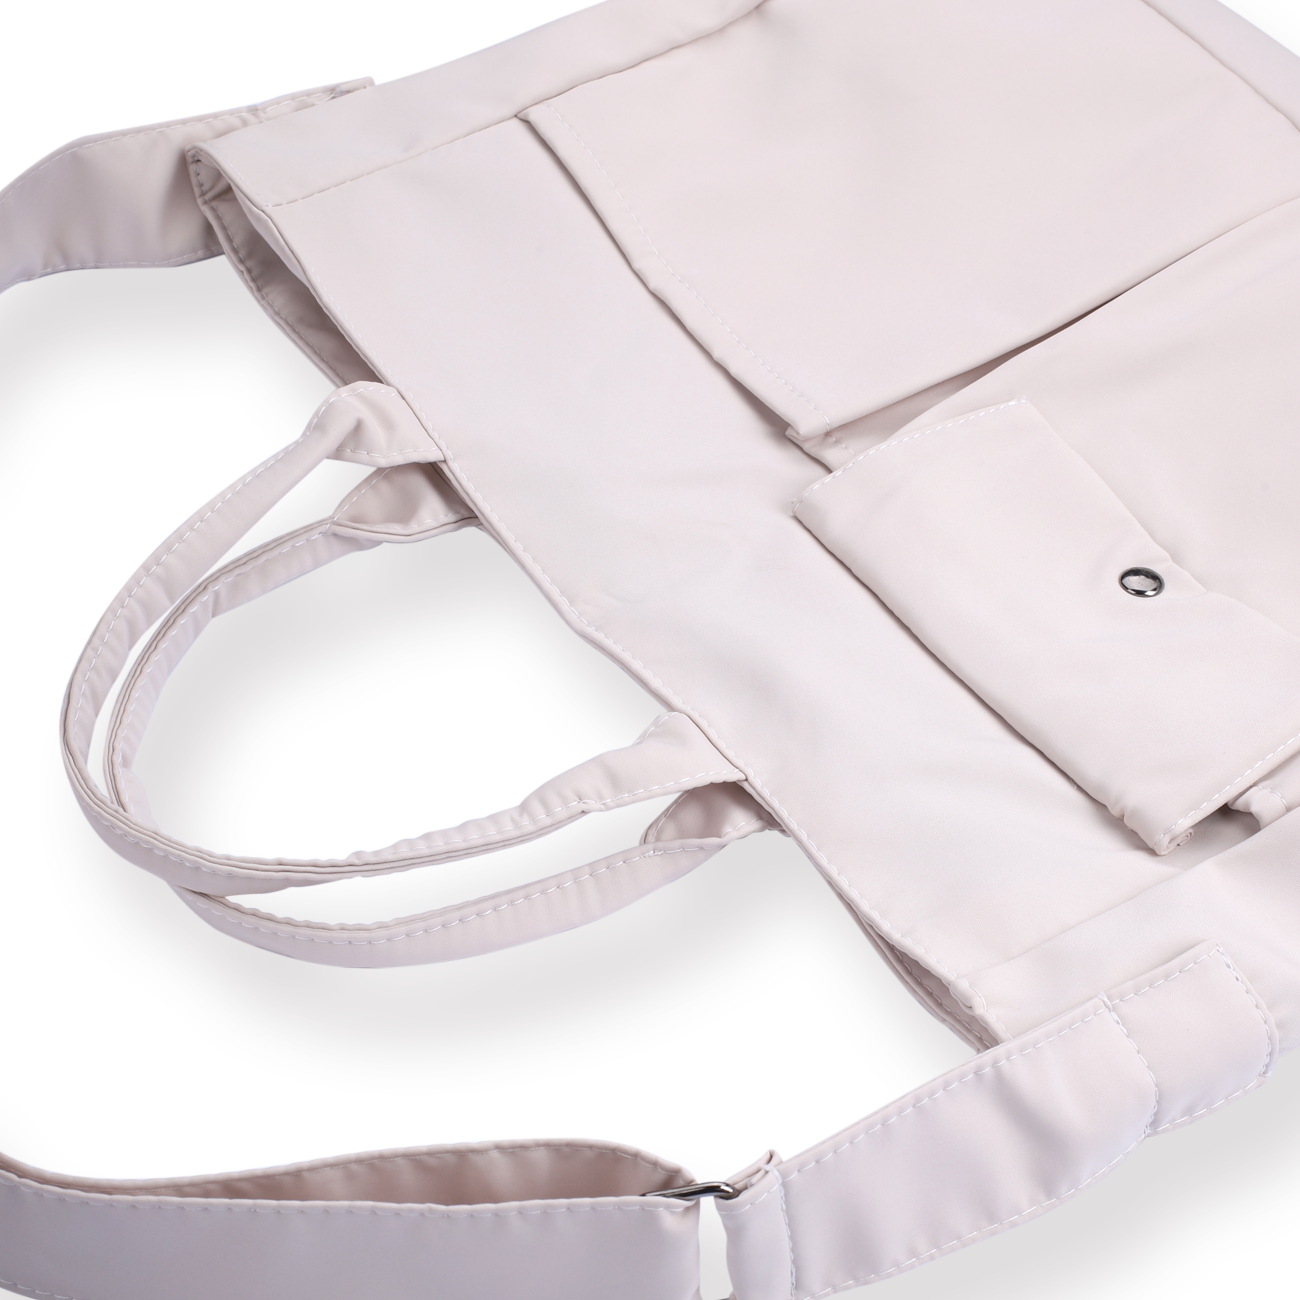 Nylon Shoulder Bag - White - Stationery Pal